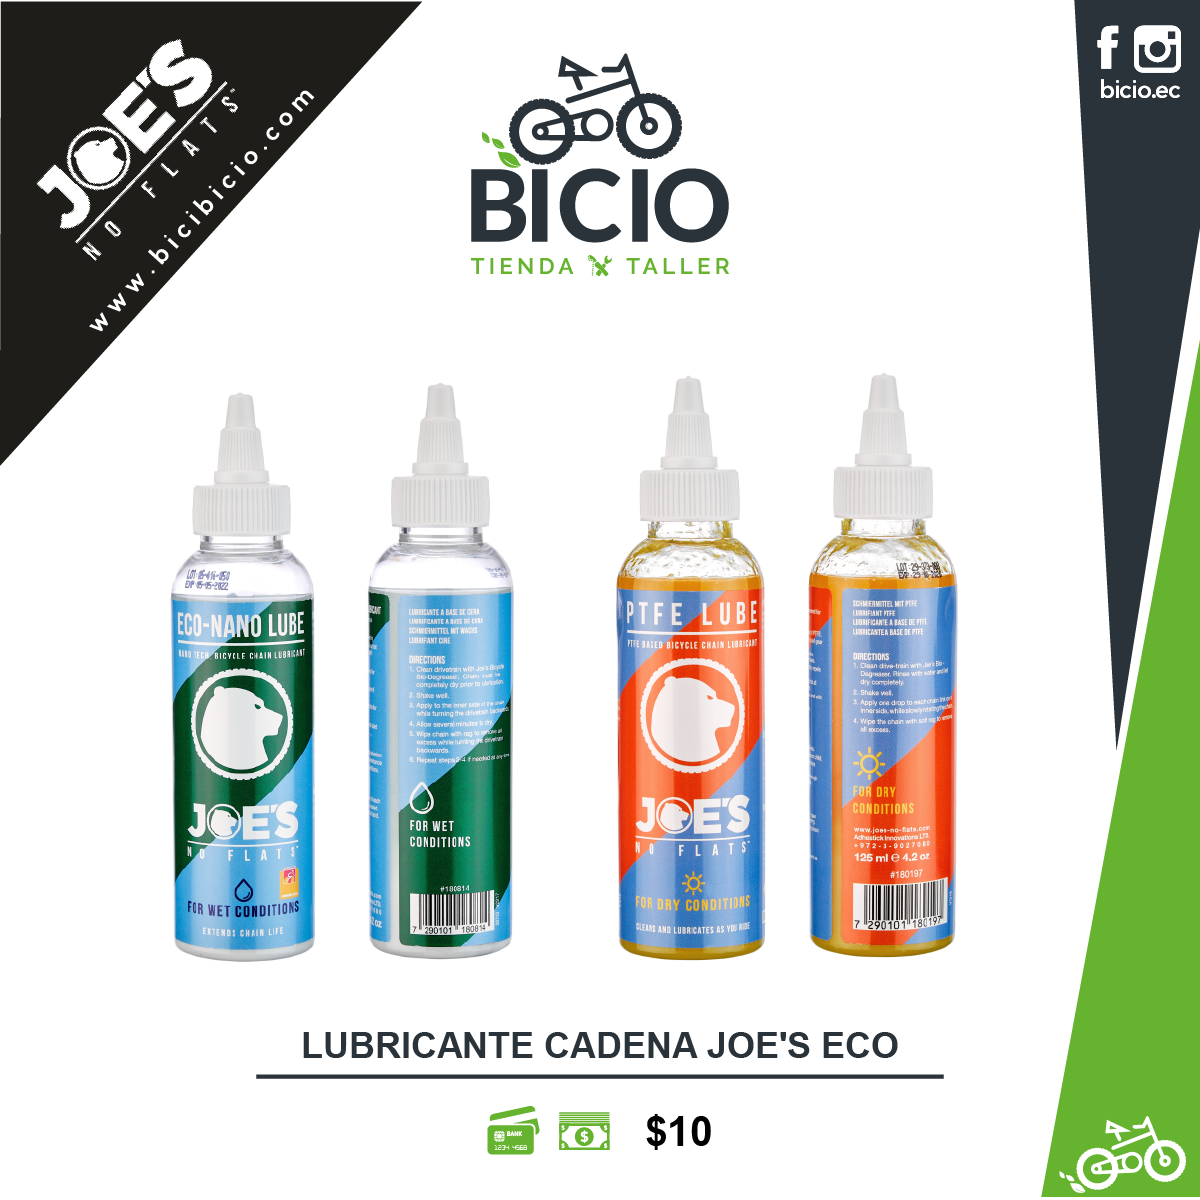 Lubricante cadena JOE'S ECO - Bicio tienda - taller de bicicletas